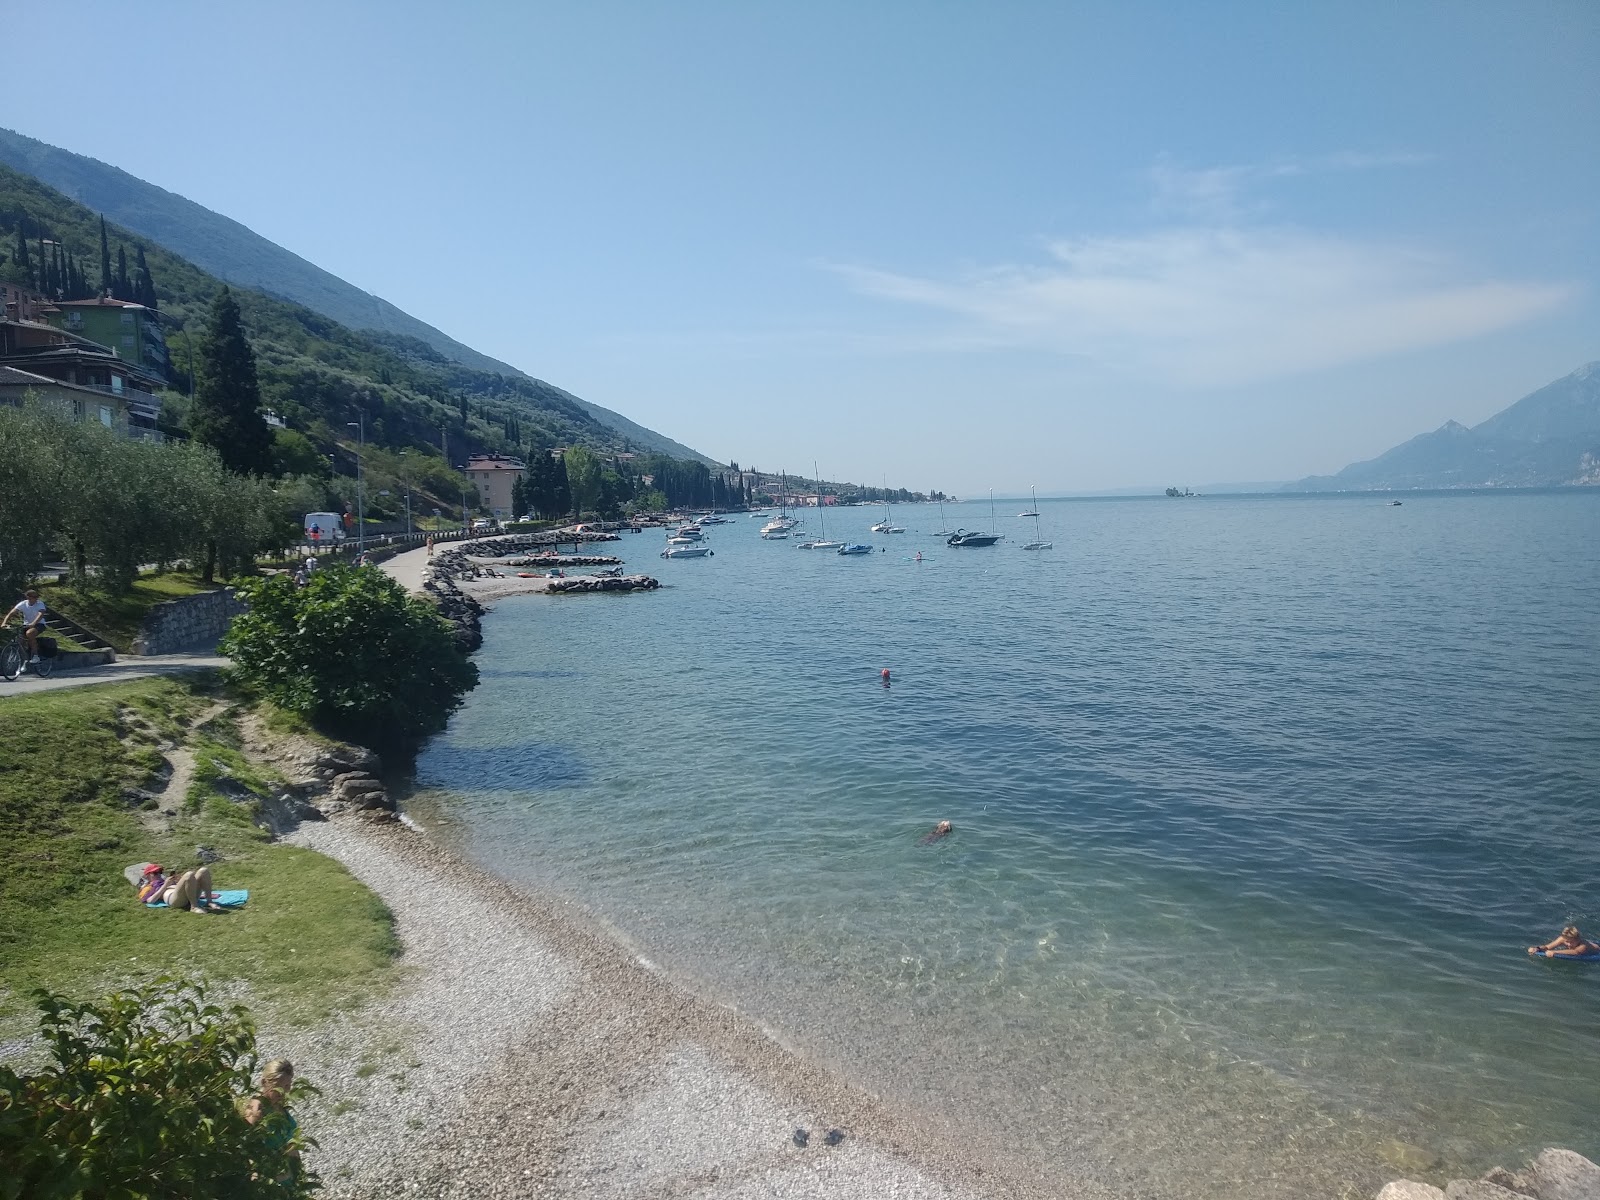 Photo de Spiaggia val di sogno - endroit populaire parmi les connaisseurs de la détente